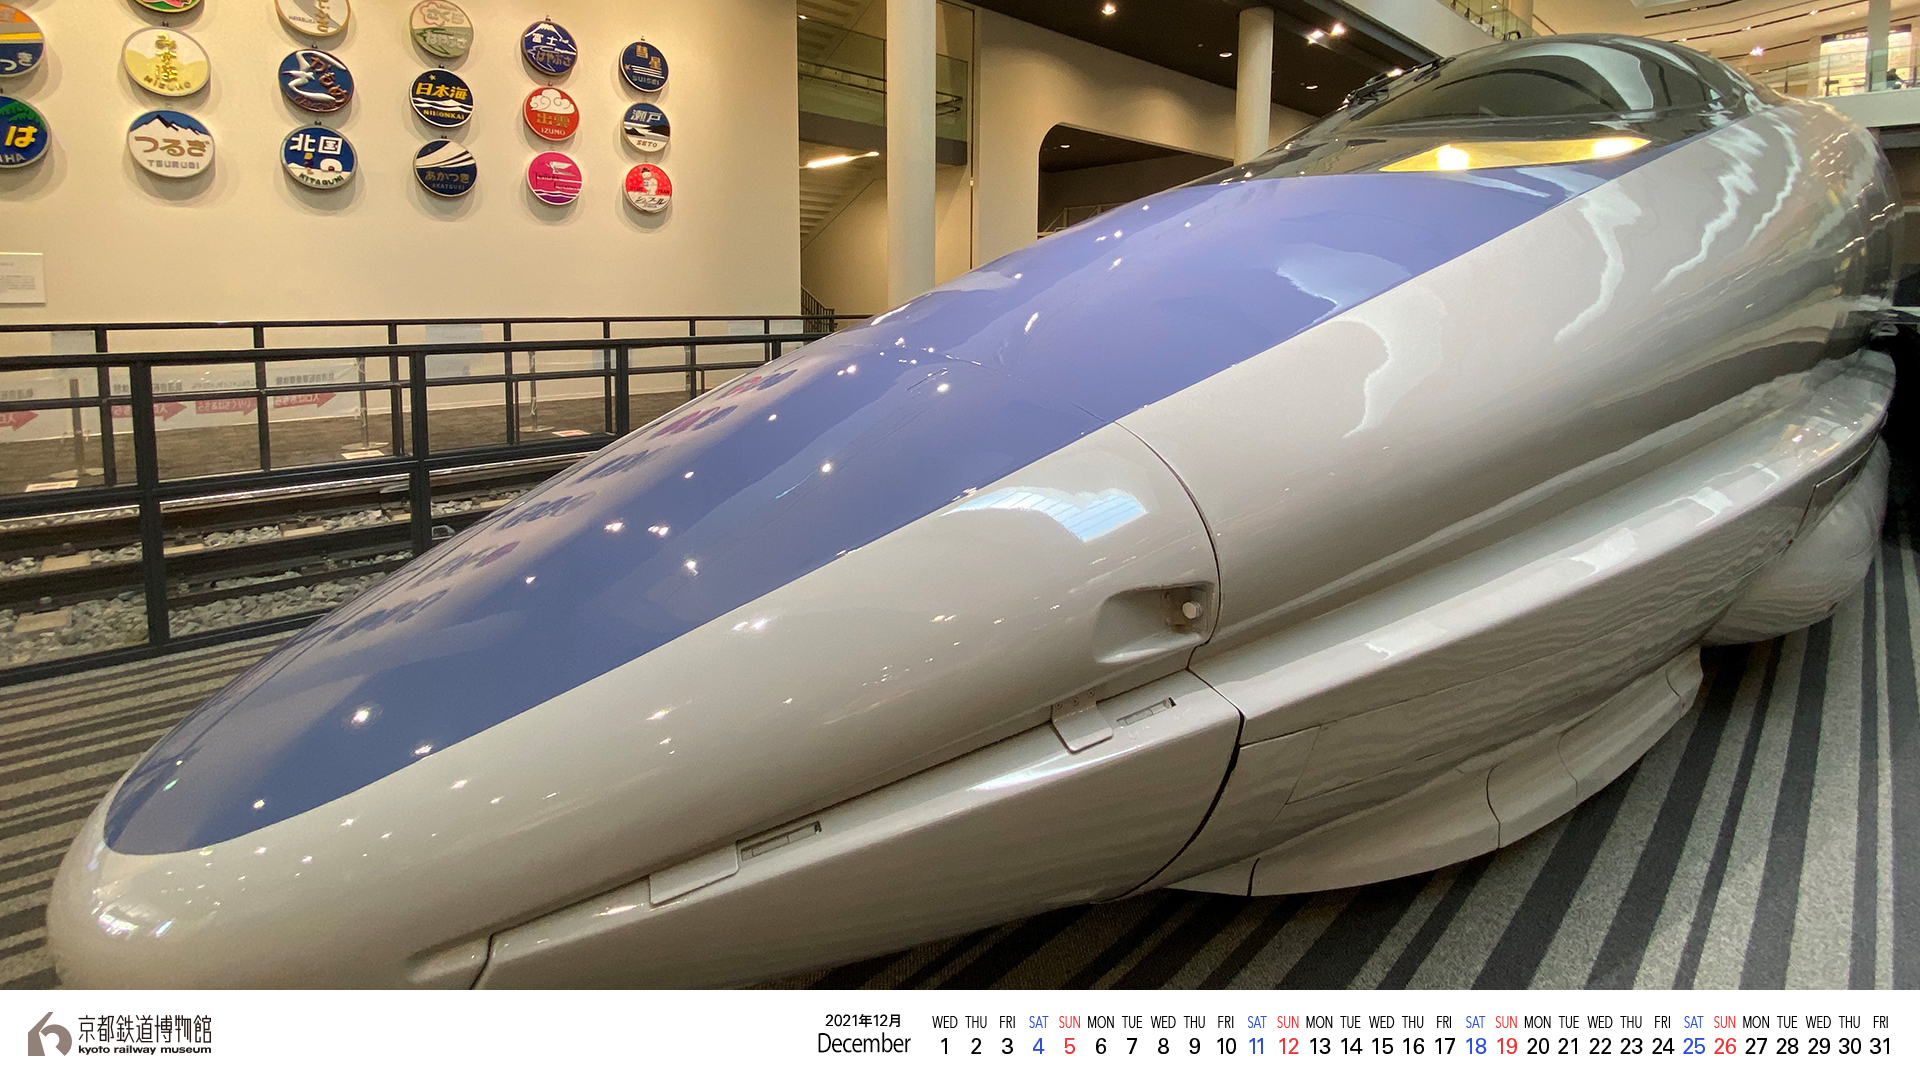 壁紙カレンダー 京都鉄道博物館